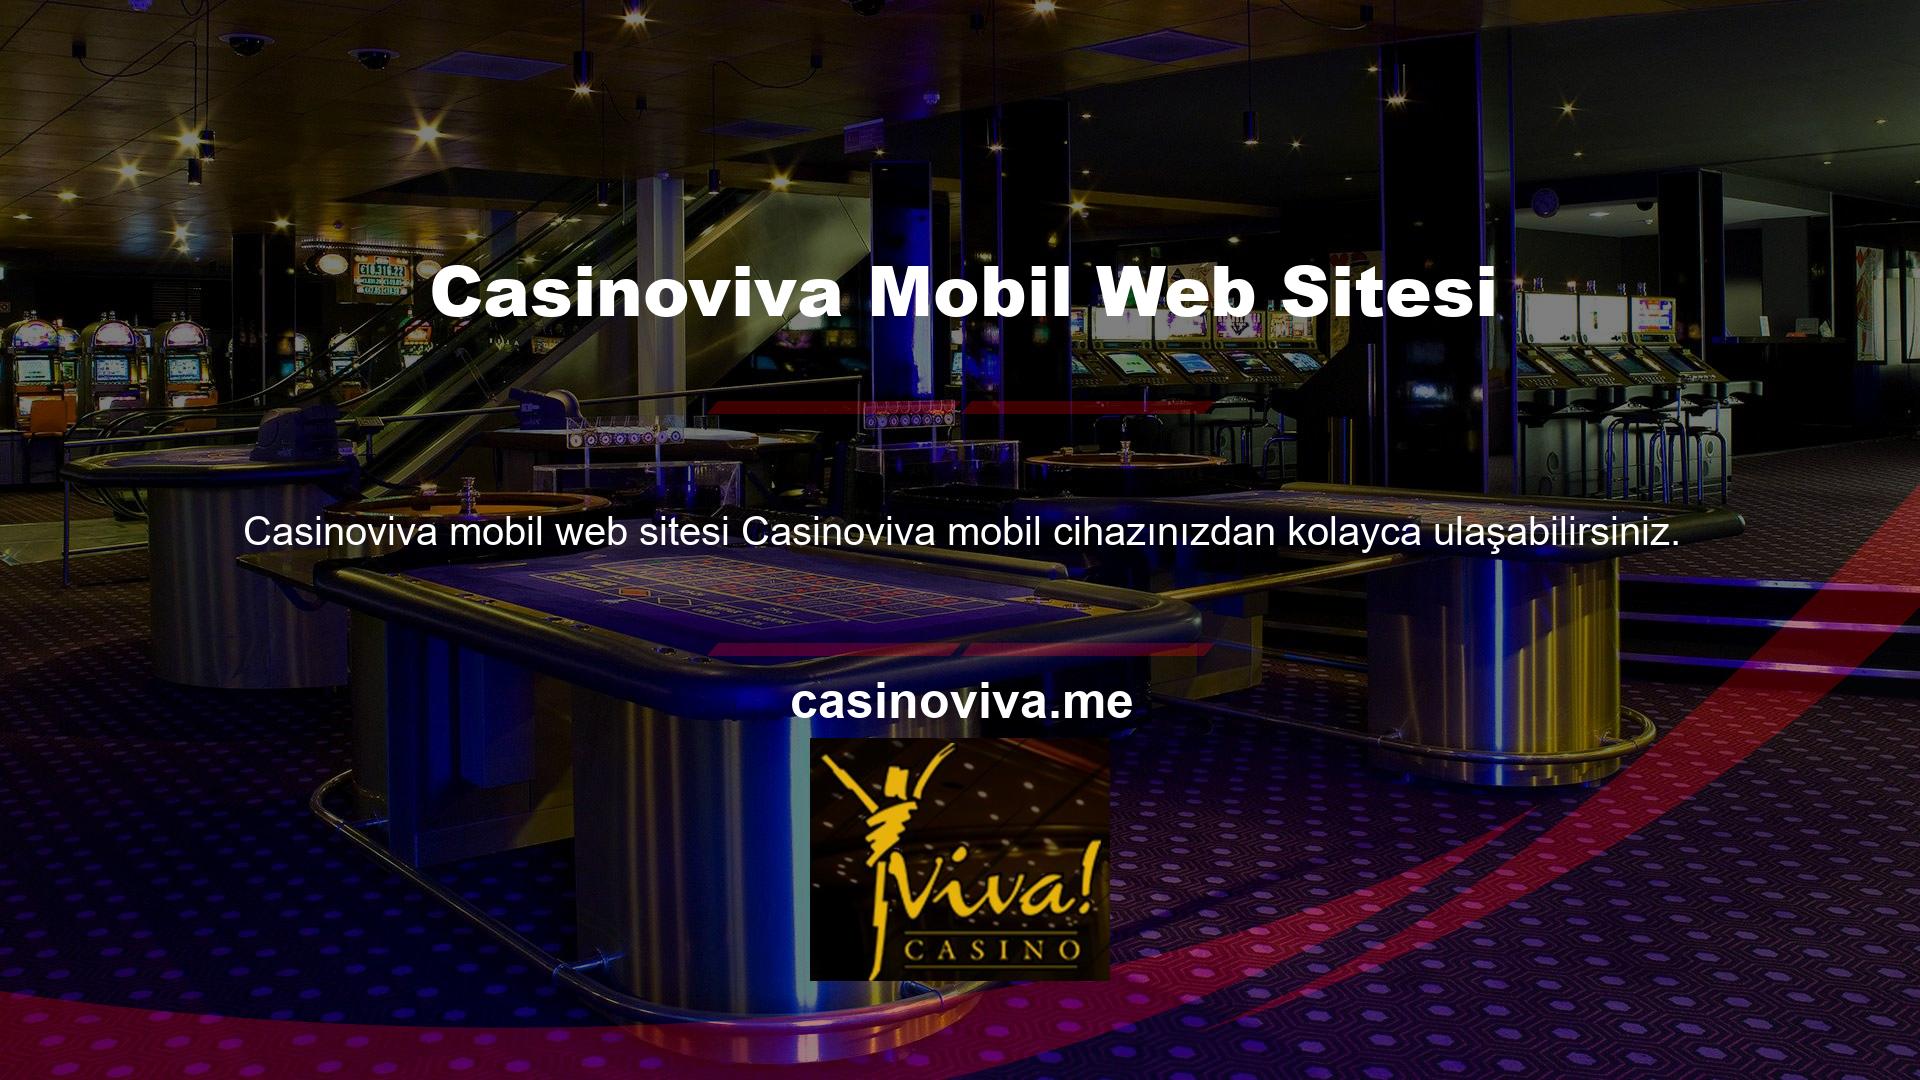 Casinoviva mobil web sitesi aktif ve kullanıma hazırdır